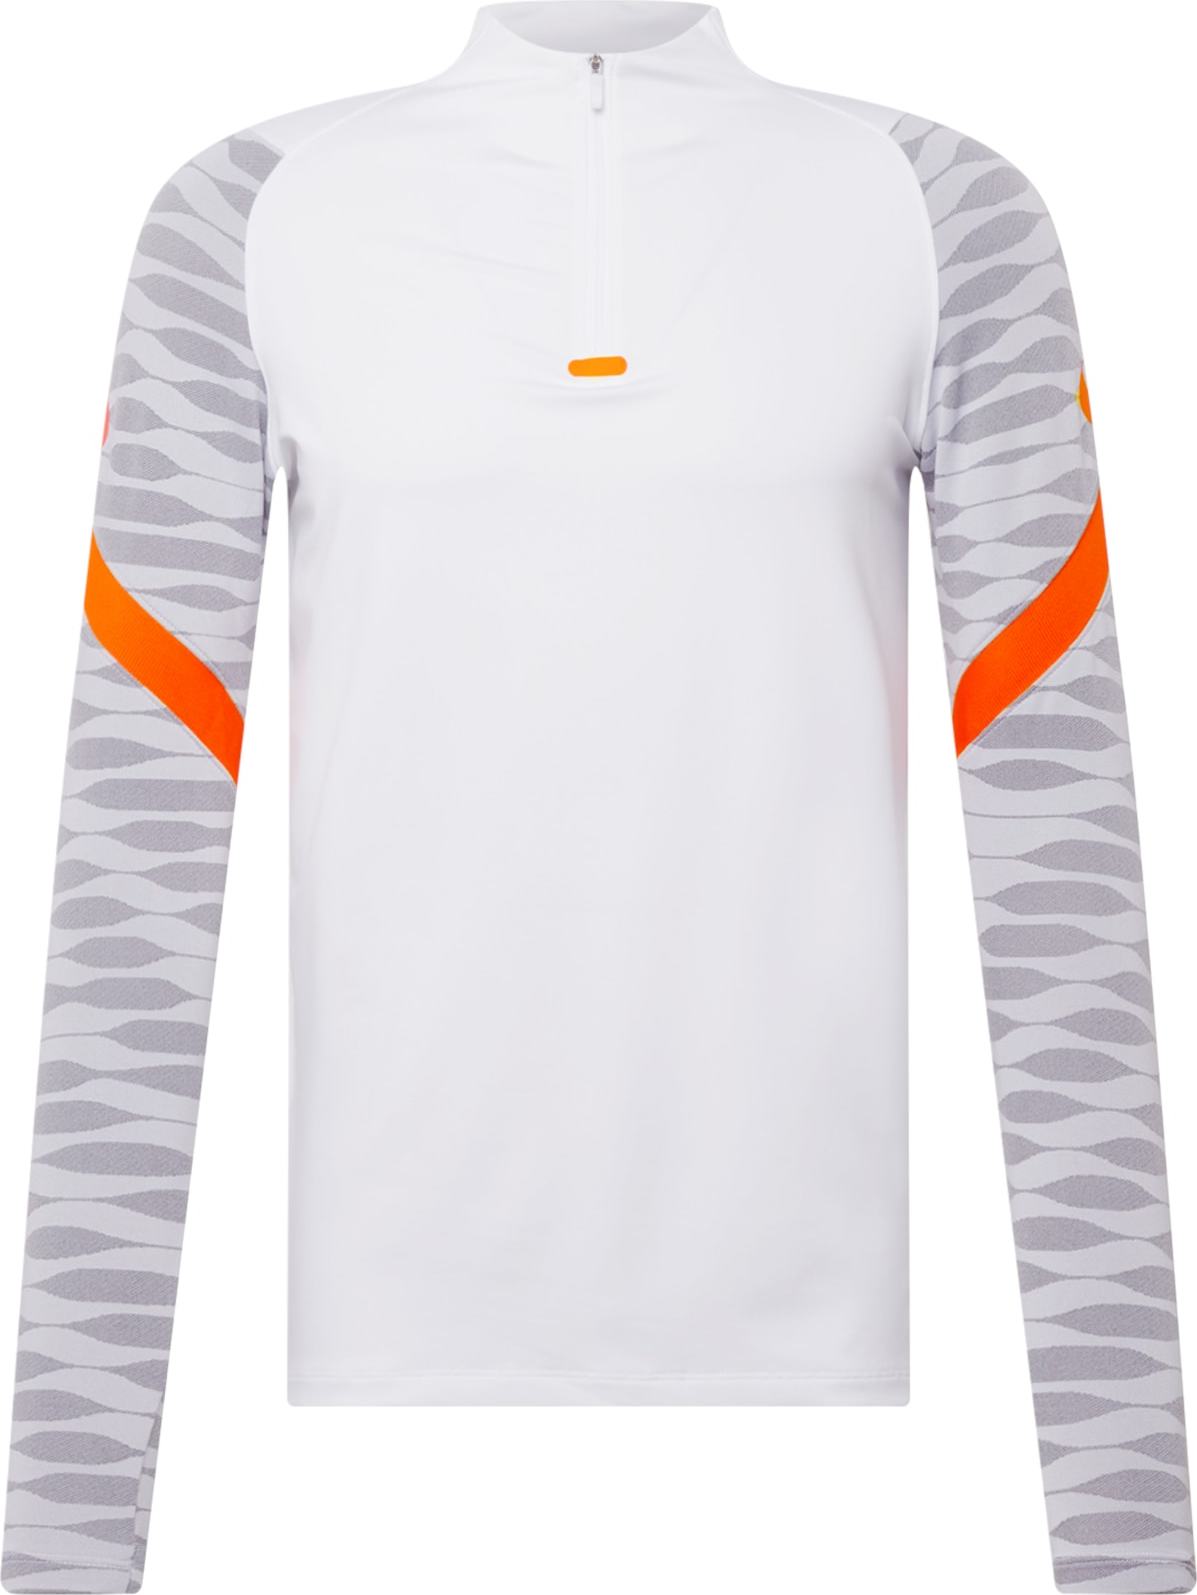 NIKE Funkční tričko 'Strike' bílá / oranžová / šedá